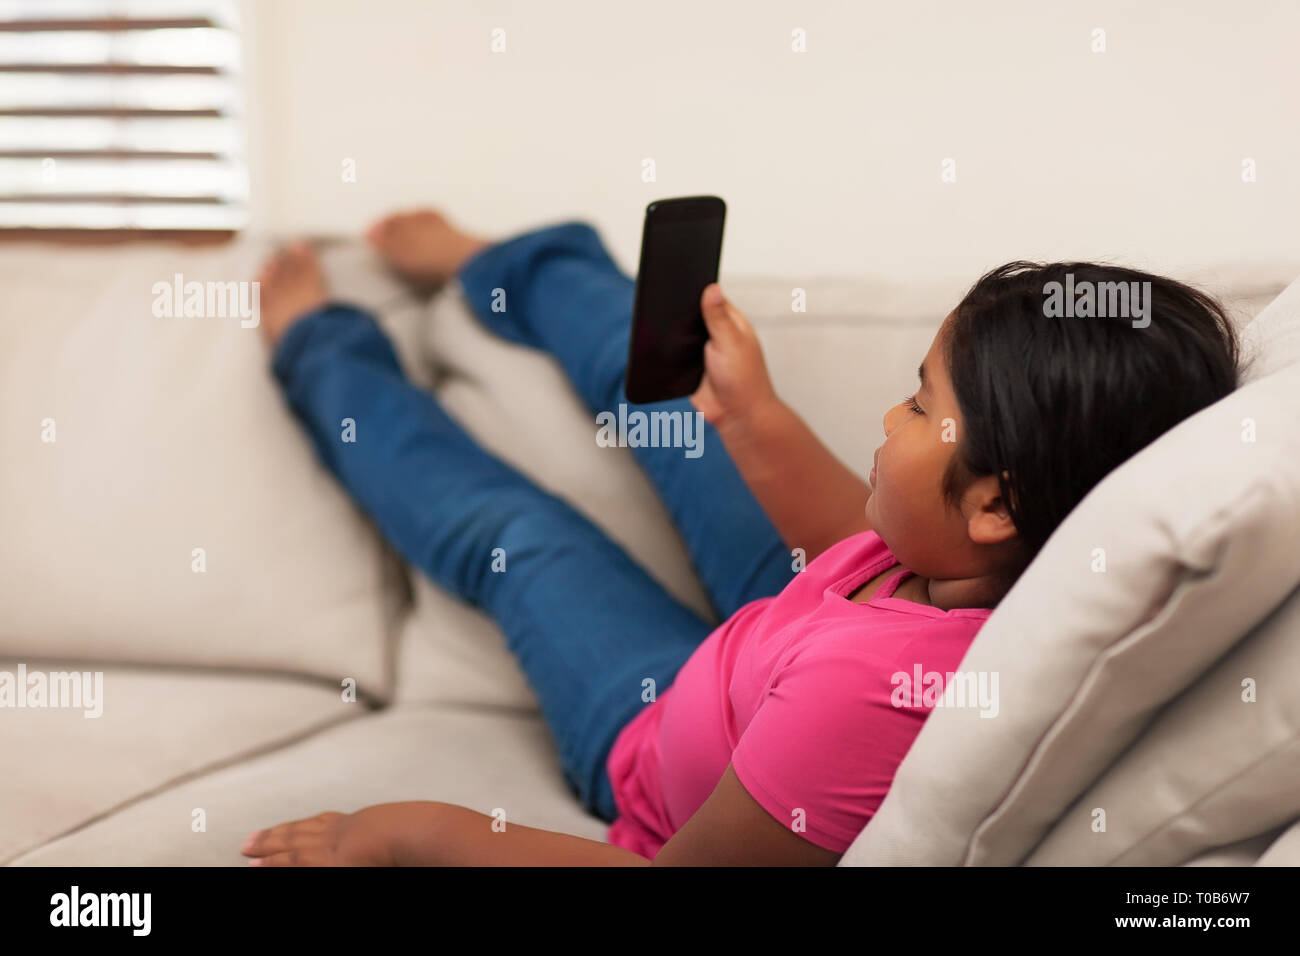 Razza mista 8 anno vecchia ragazza a guardare il telefono cellulare mentre si distende le sue gambe; seduta su un divano con una posa rilassata. Foto Stock